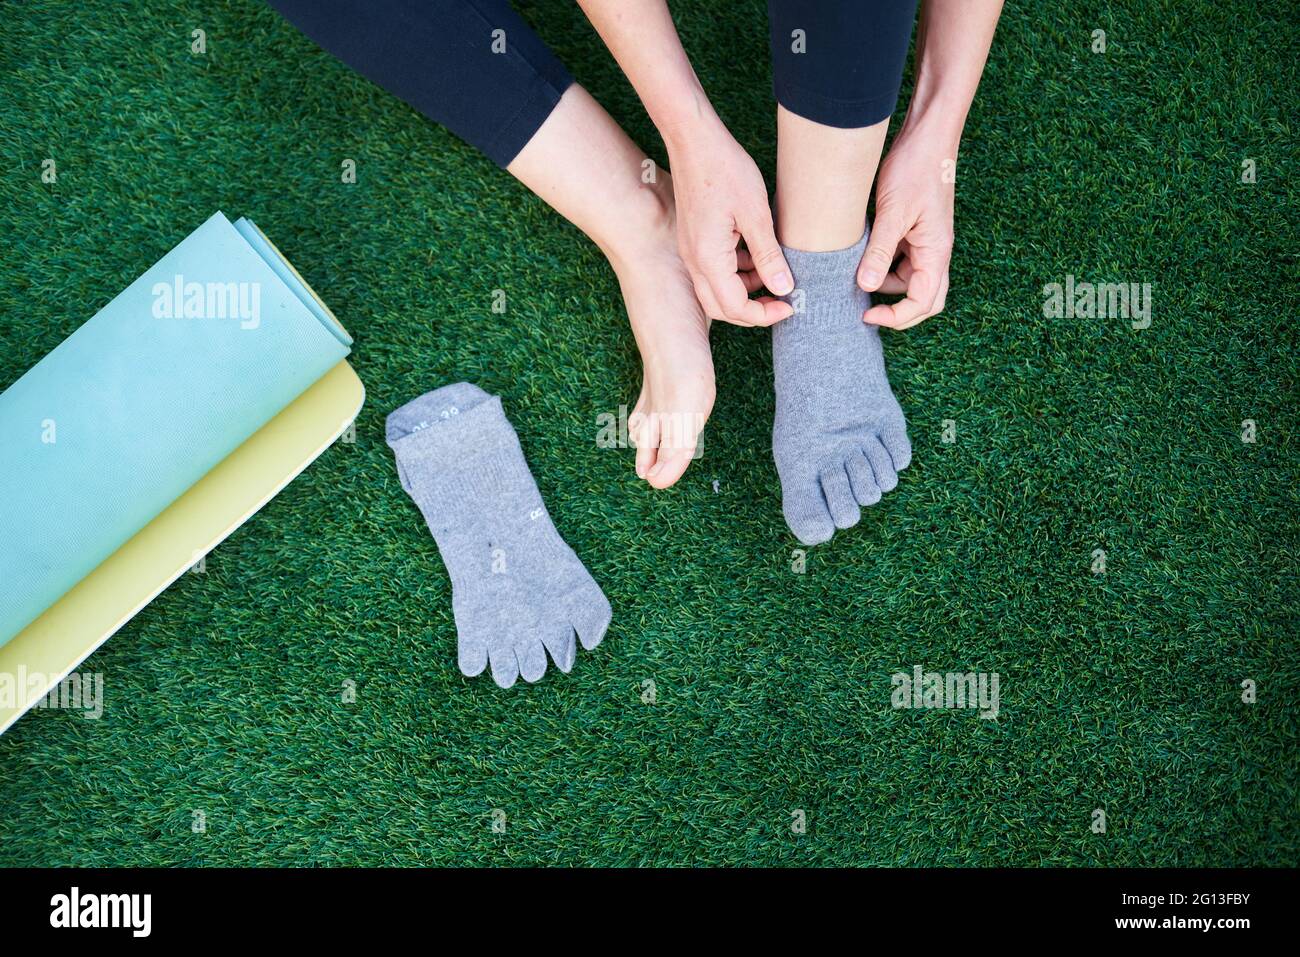 Primo piano delle mani di una donna che mette su calze yoga accanto a un tappetino in erba Foto Stock